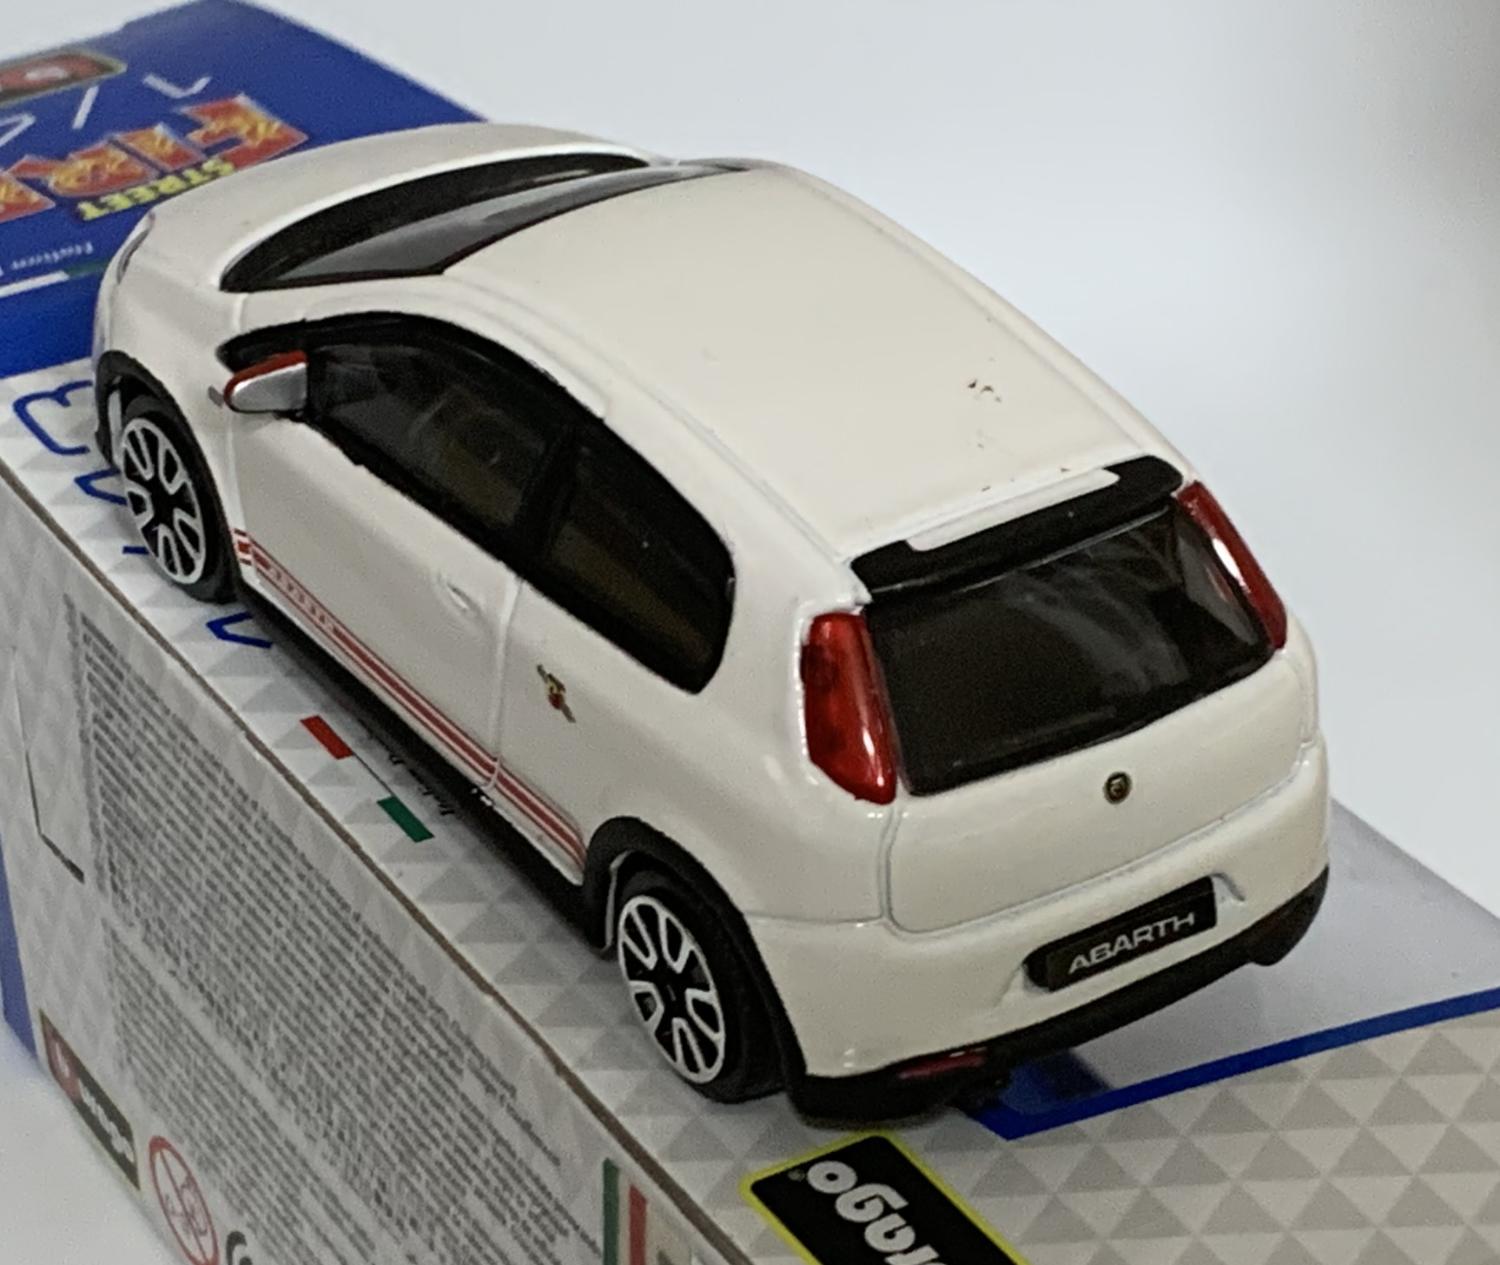 Fiat Abarth Grande Punto 2014 in white 1:43 scale model from Bburago, streetfire